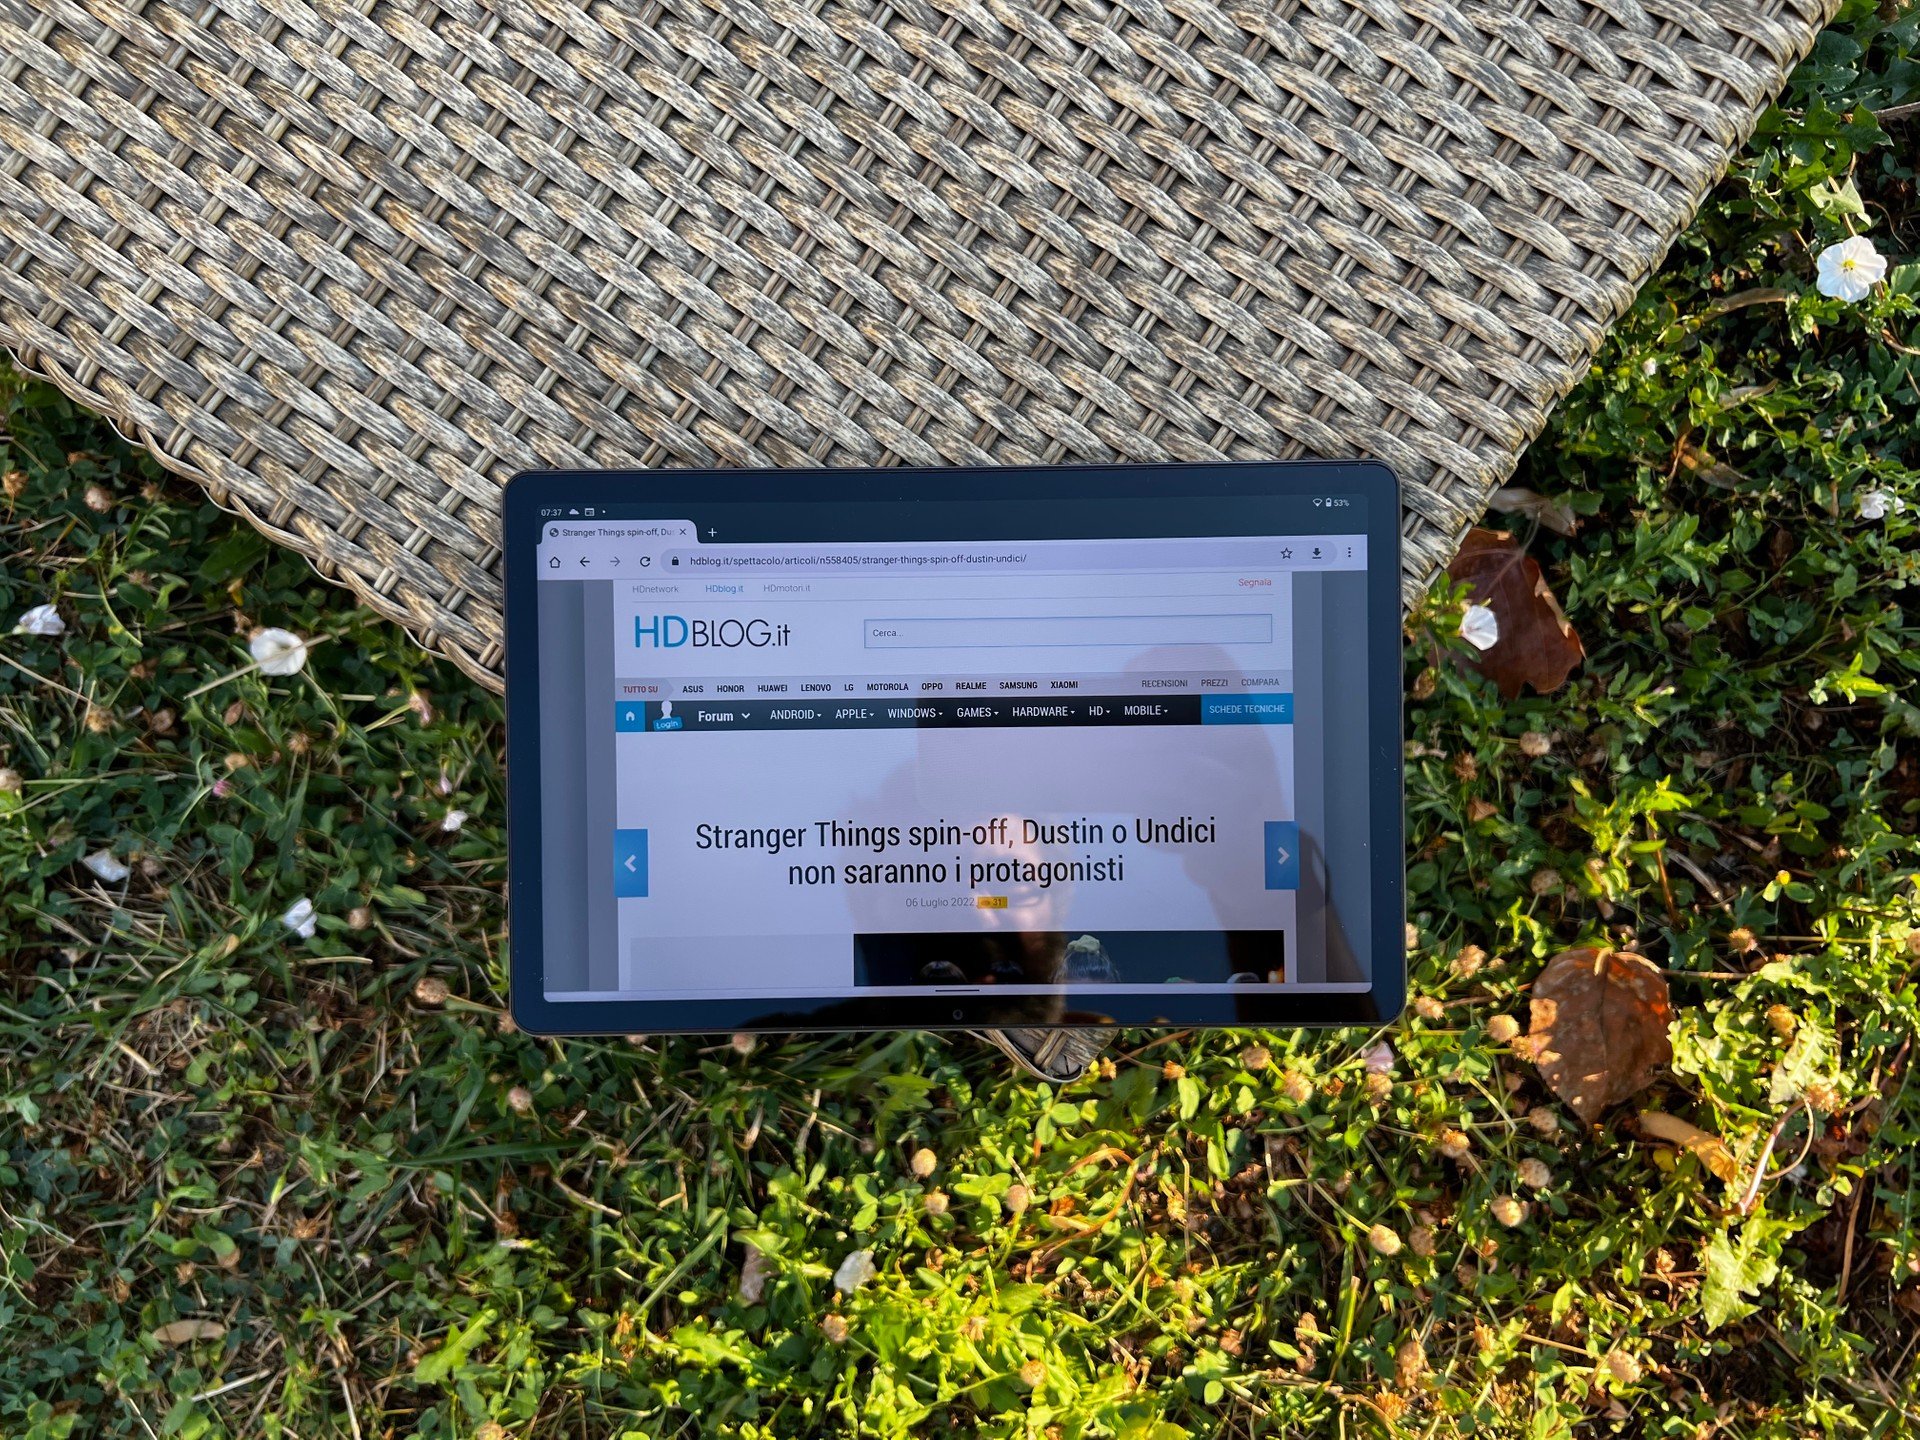 Lenovo Tab M10 da 10,1 e Android 11: il MIGLIOR tablet economico